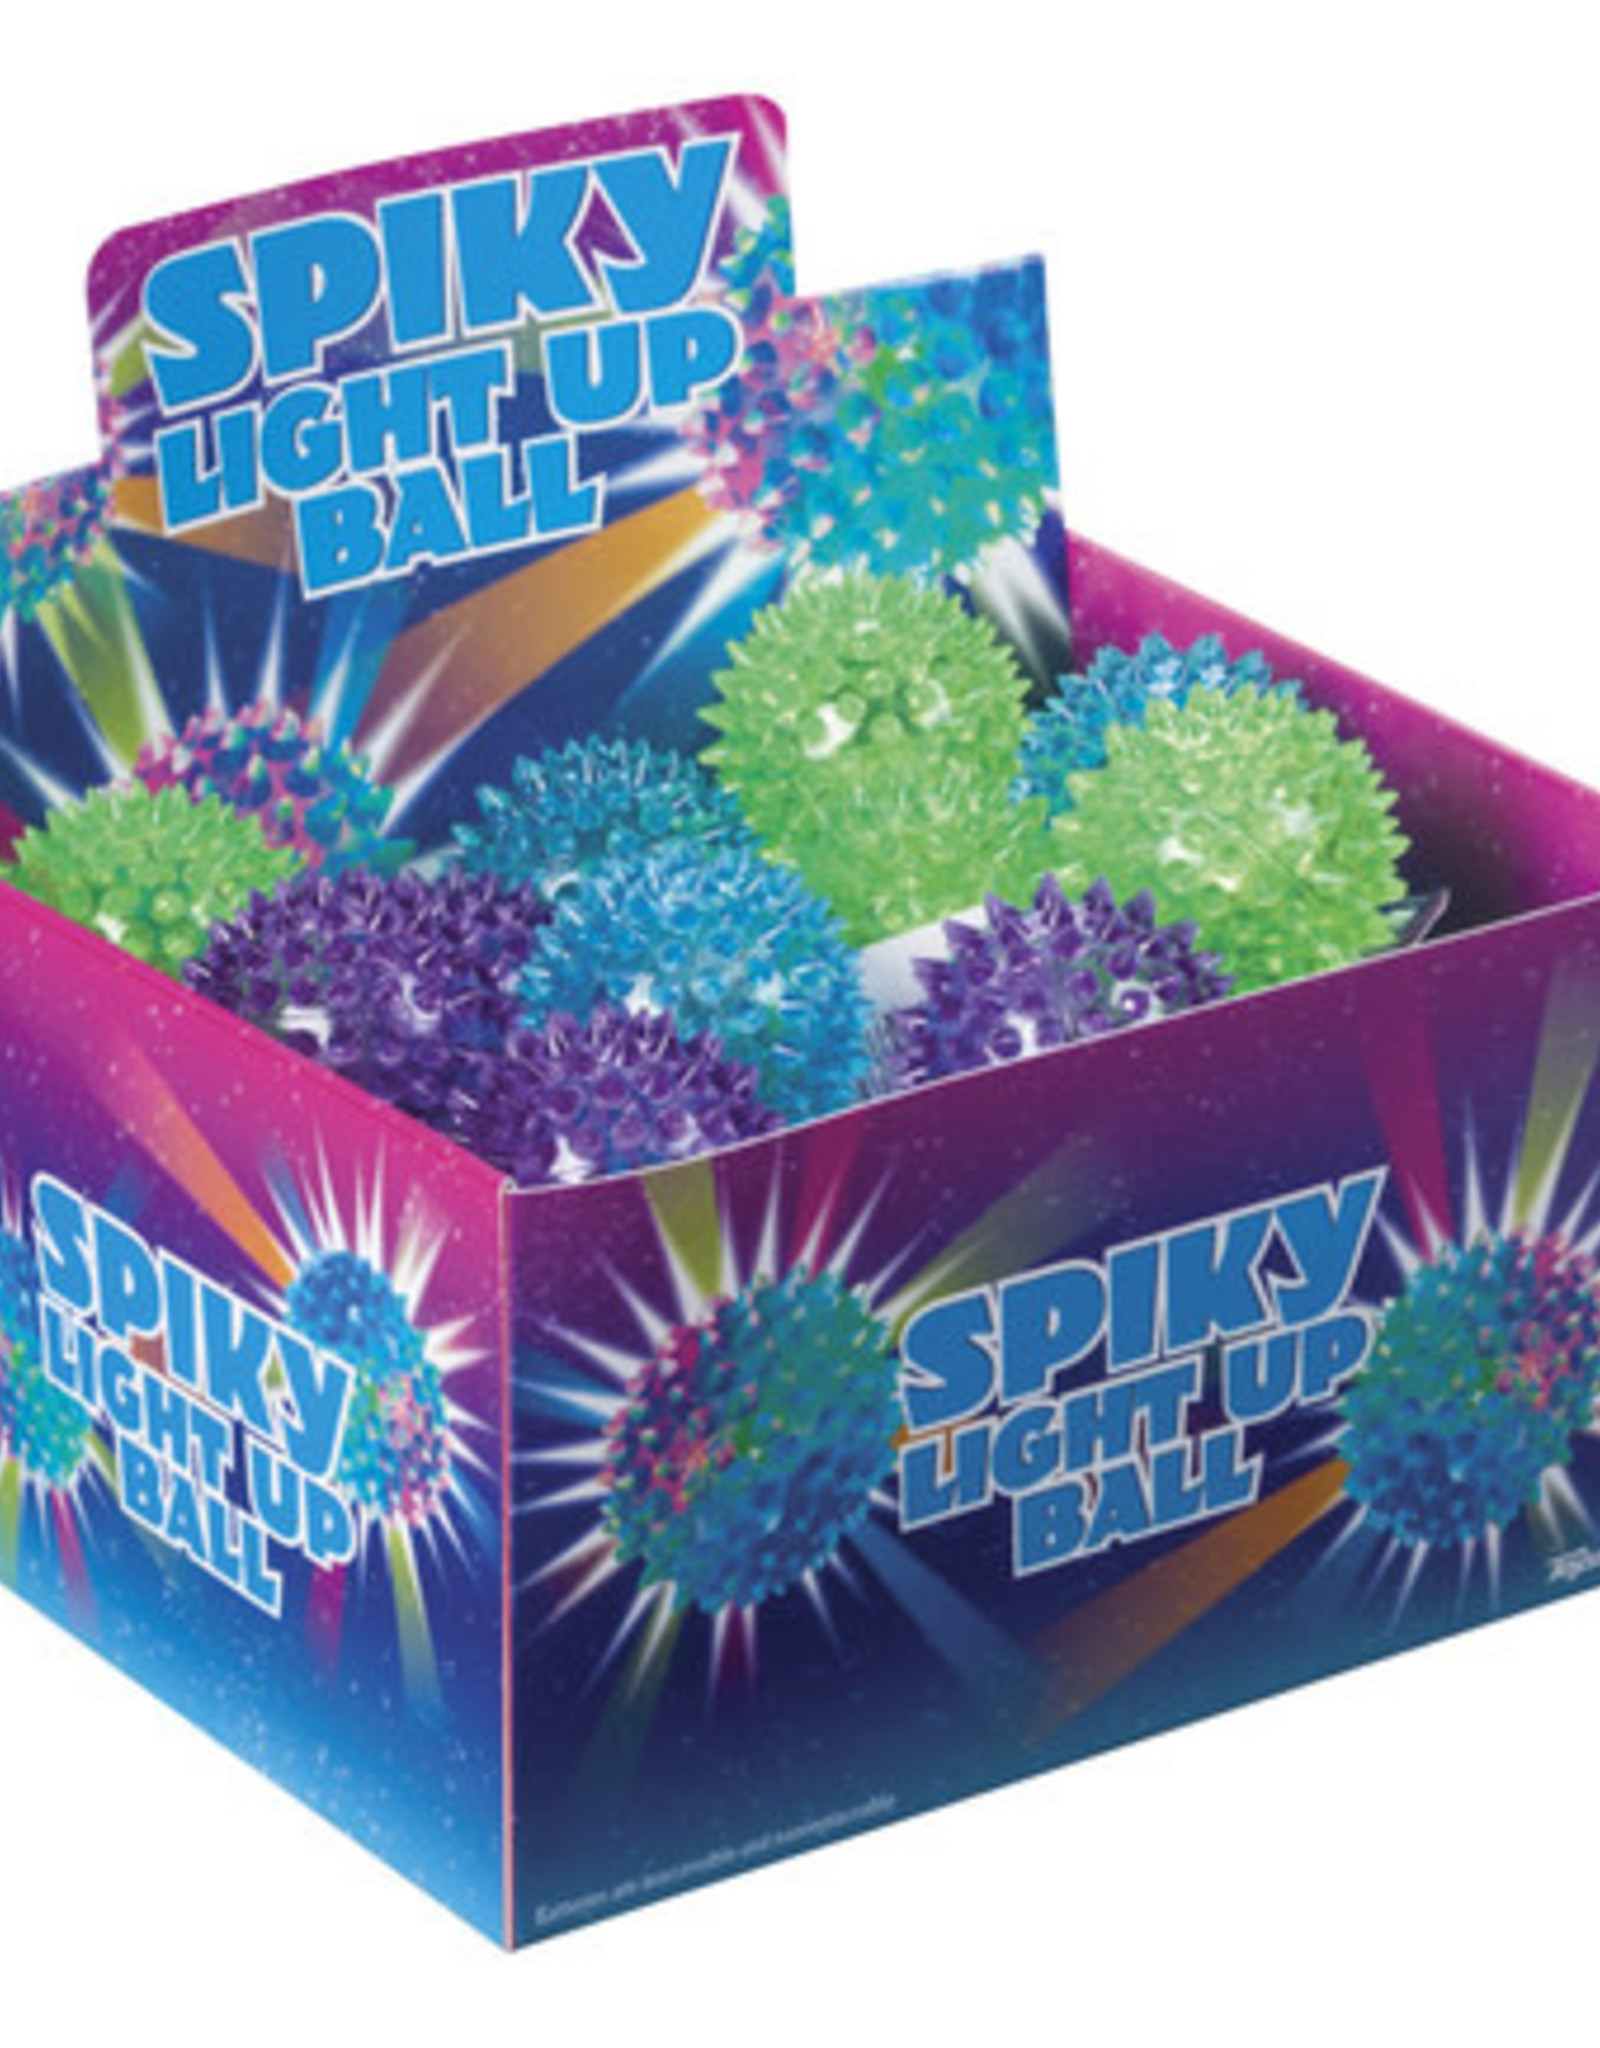 Toysmith Flashing Spiky Ball